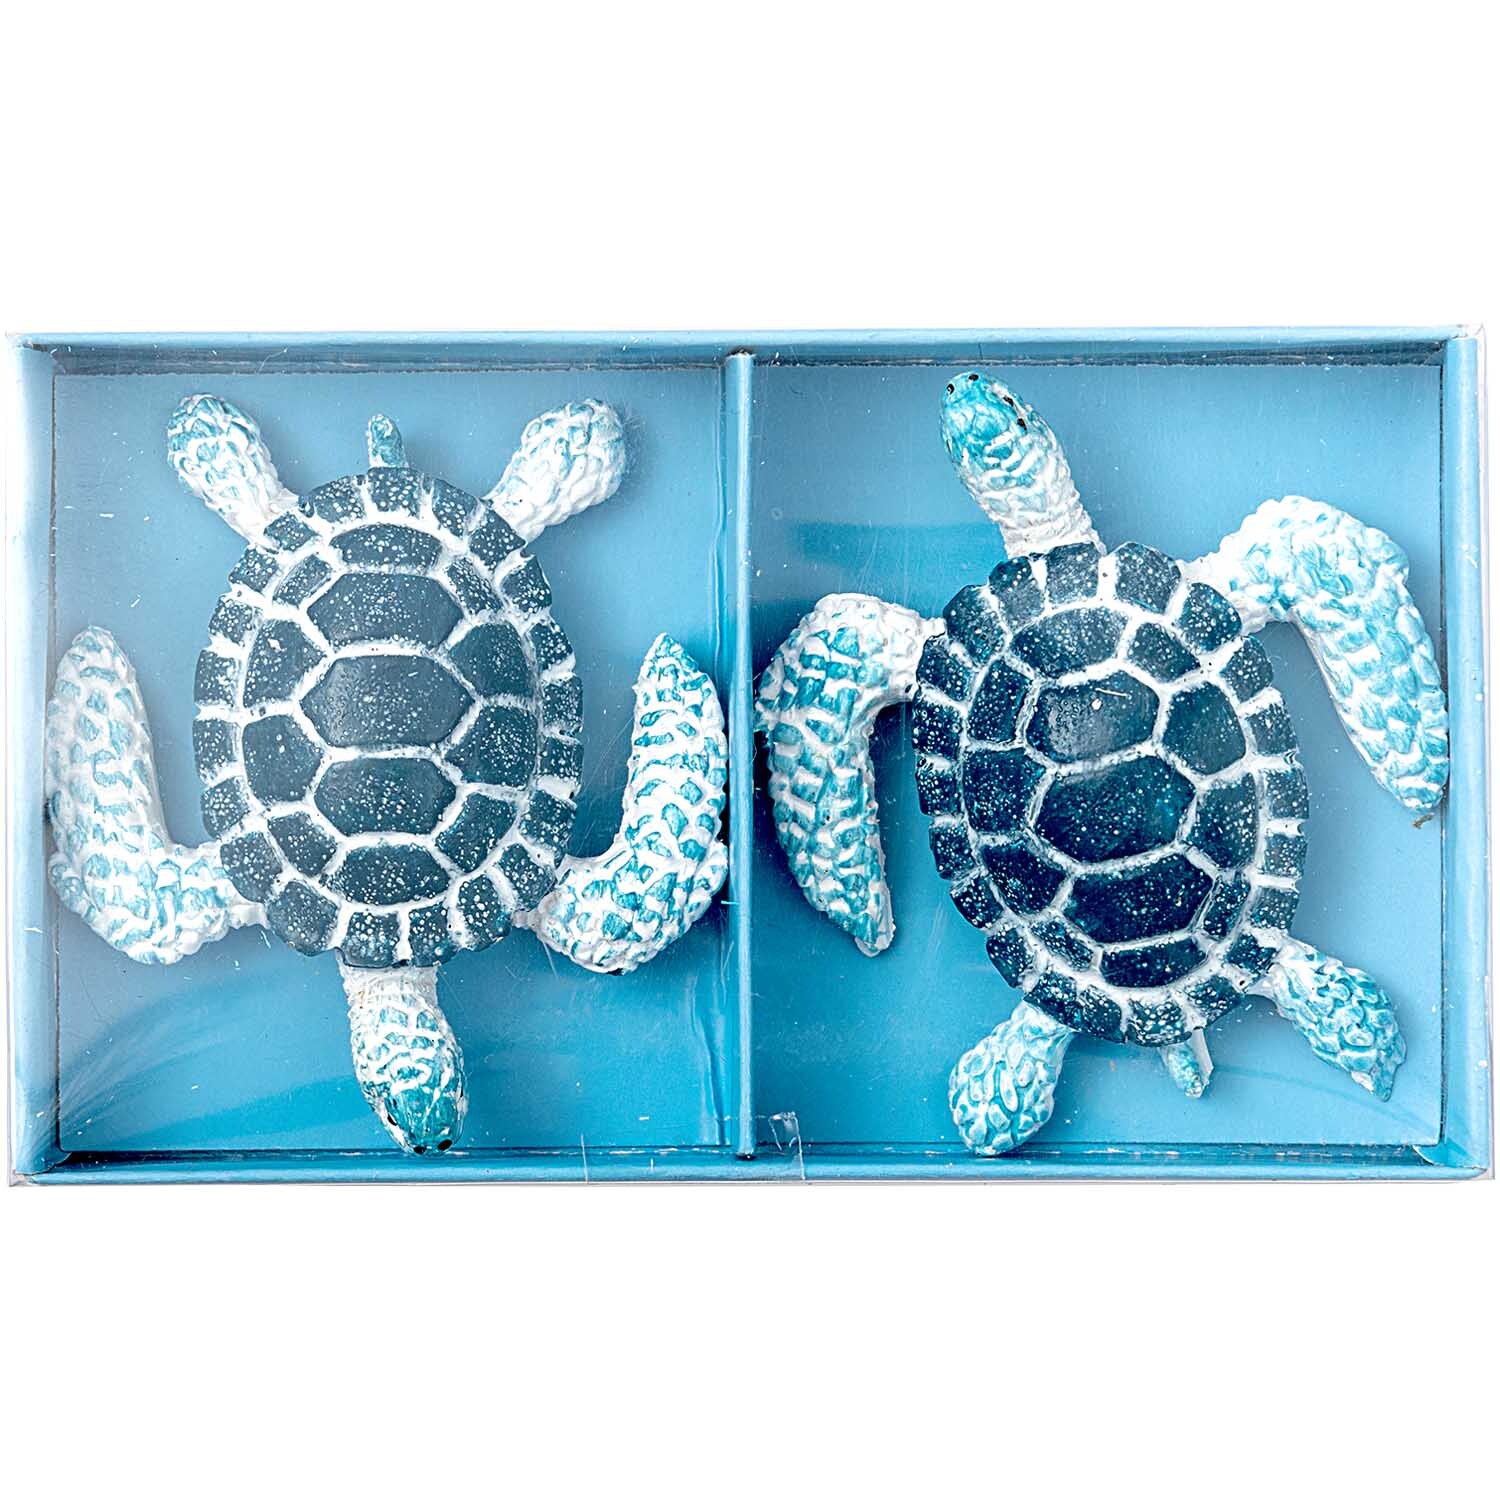 Schildkröte Polyresin blau 5,7x4,7cm 2 Stück